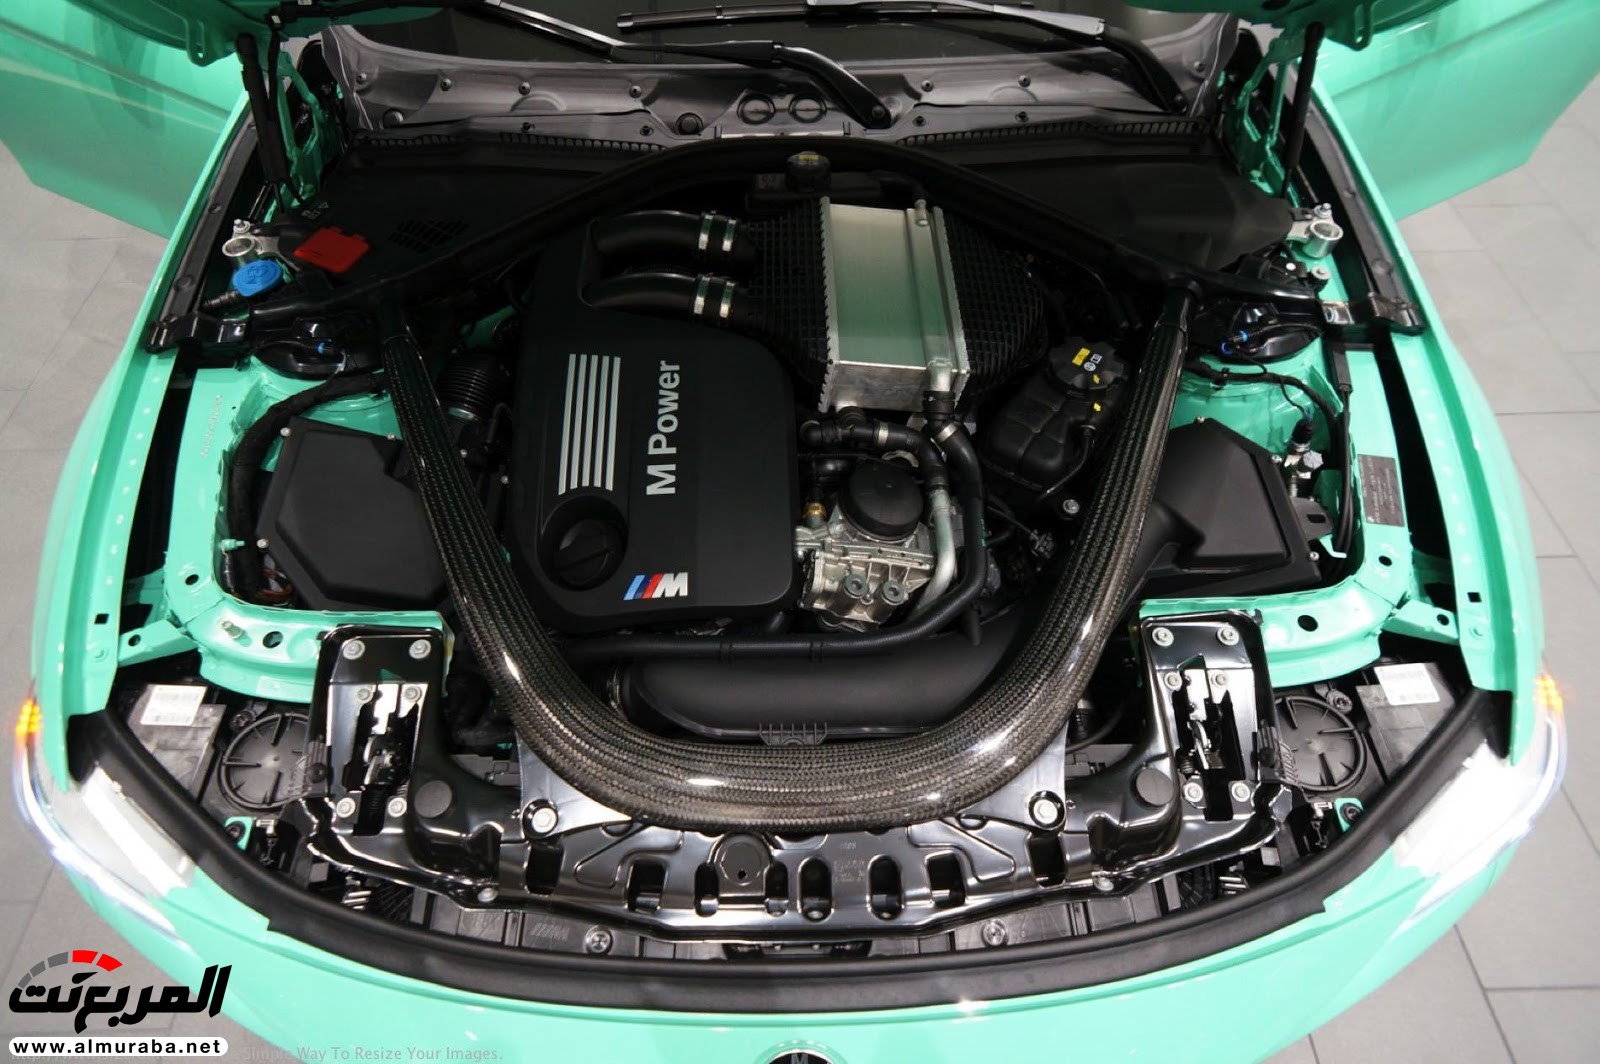 "بالصور" شاهد "بي إم دبليو" F80 M3 الخاصة بطلاء النعناع الأخضر BMW 114